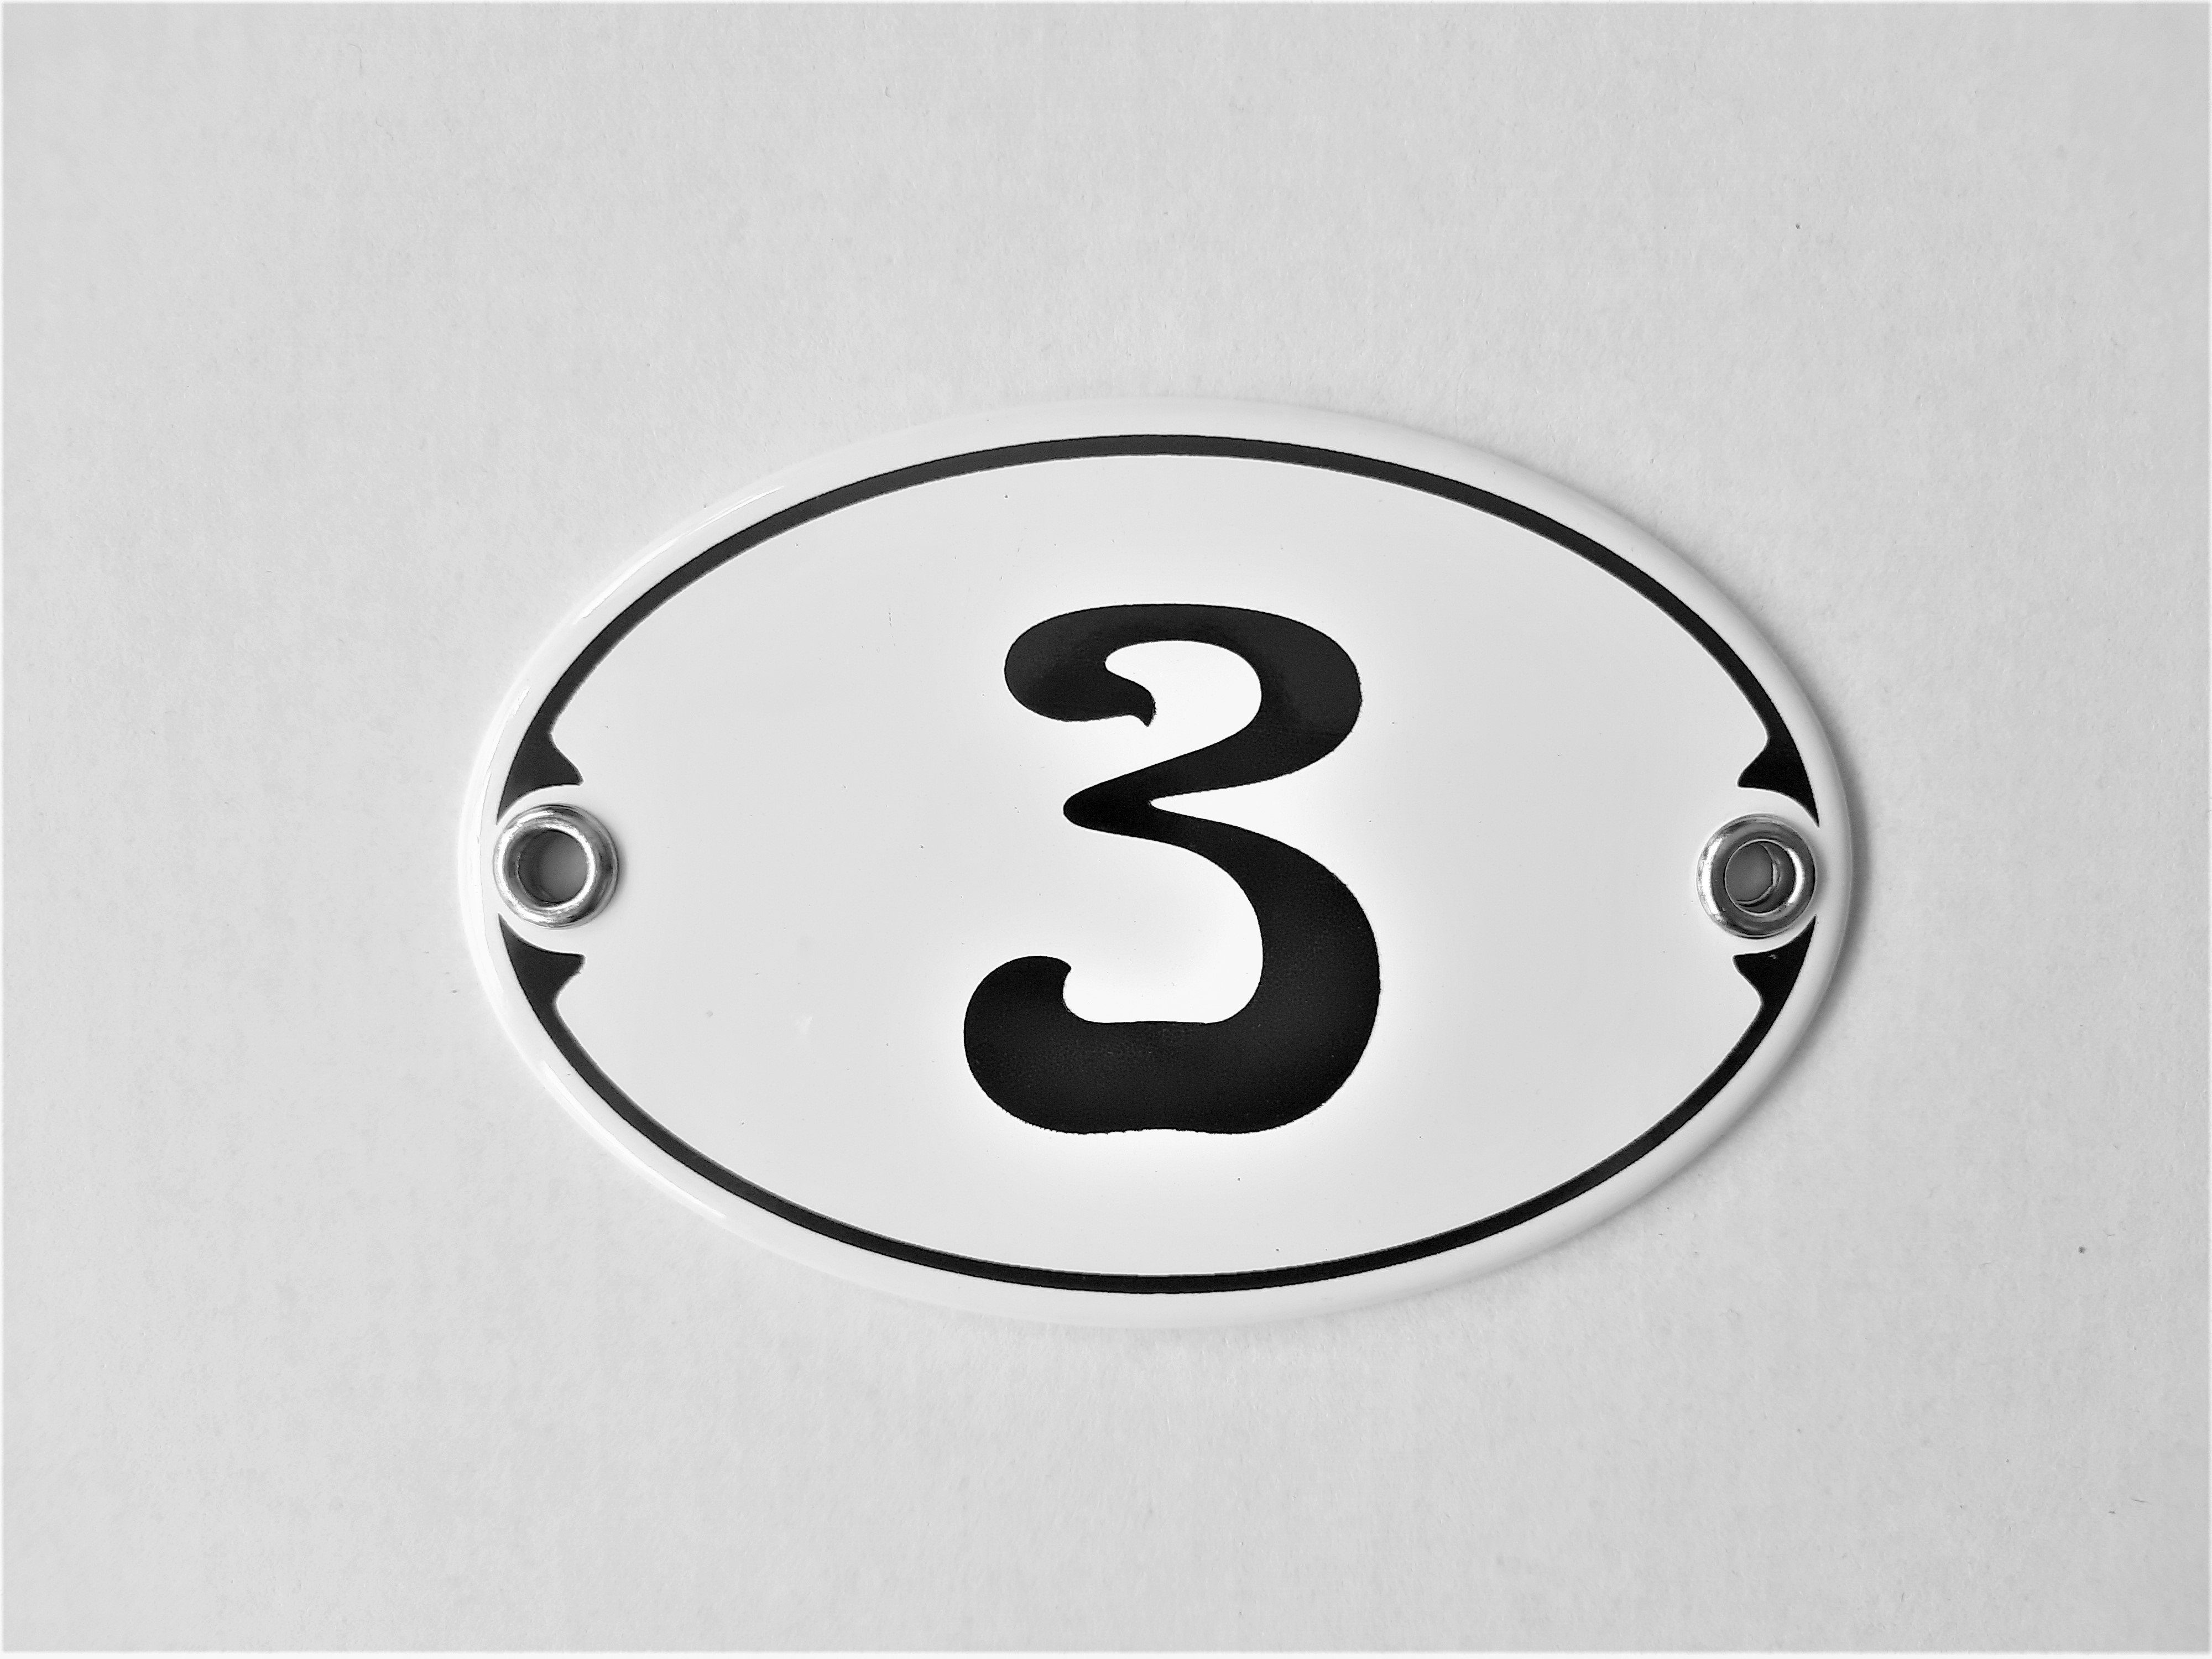 Elina Email Schilder Hausnummer Zahlenschild "3", (Emaille/Email)